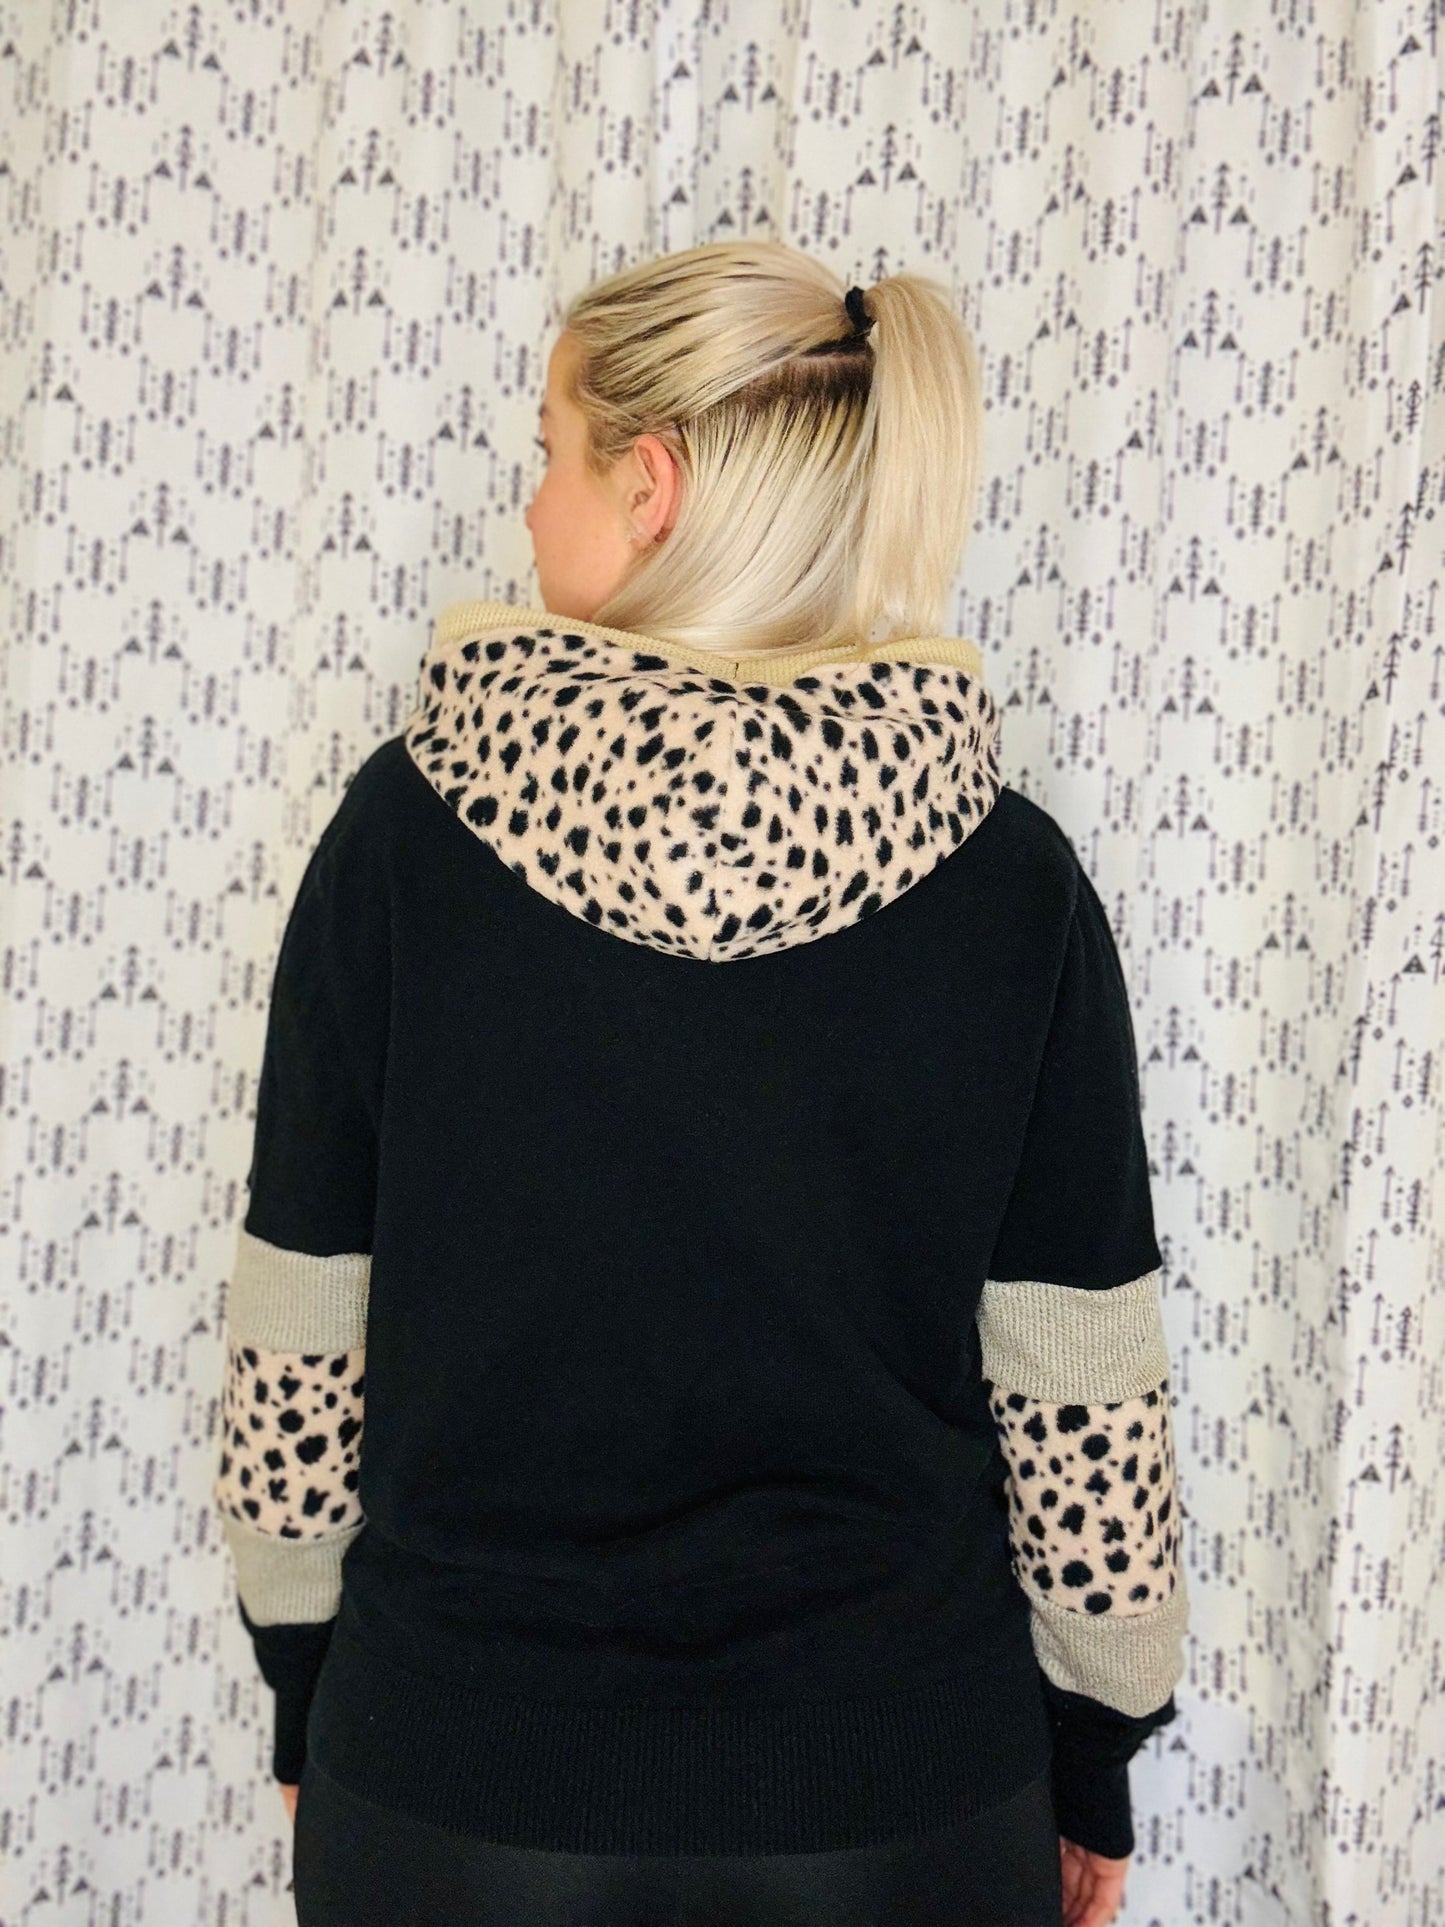 Black & Tan Leopard Buffalo Sweater  Hoodie Size- Women's M/L